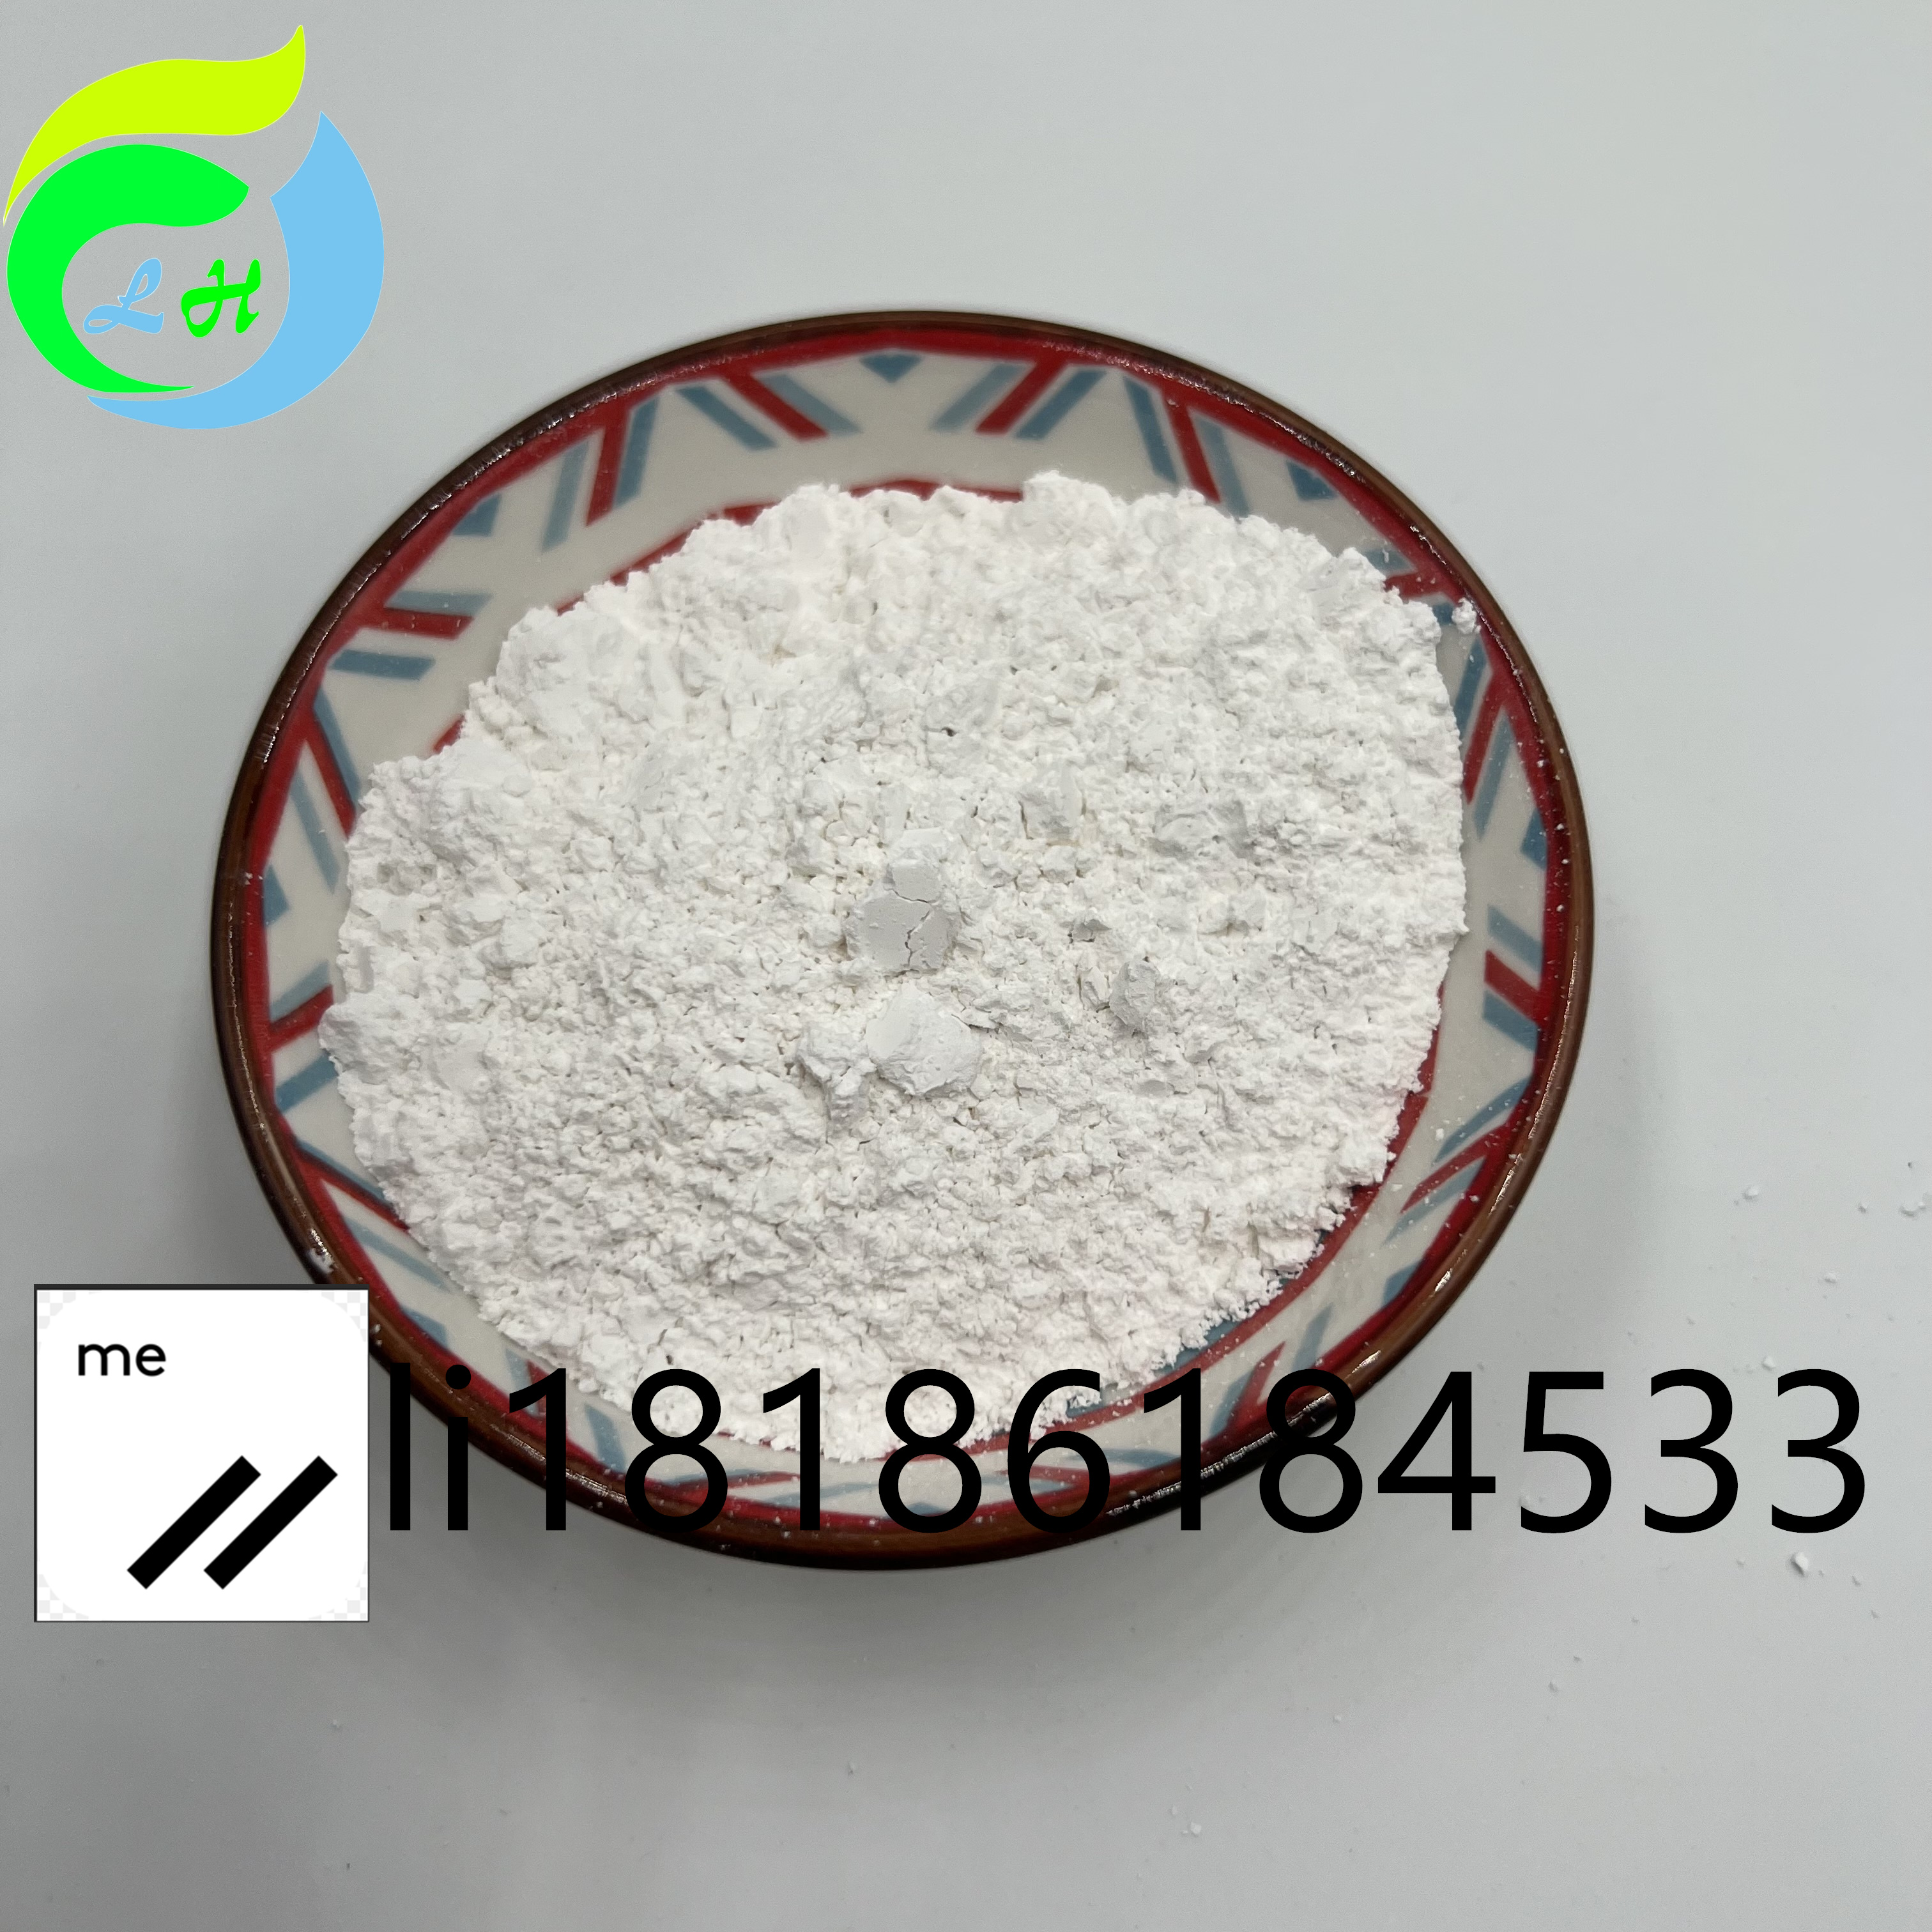 Off White Xylazine Hydrochloride Powder CAS 23076-35-9 Pharma Raw